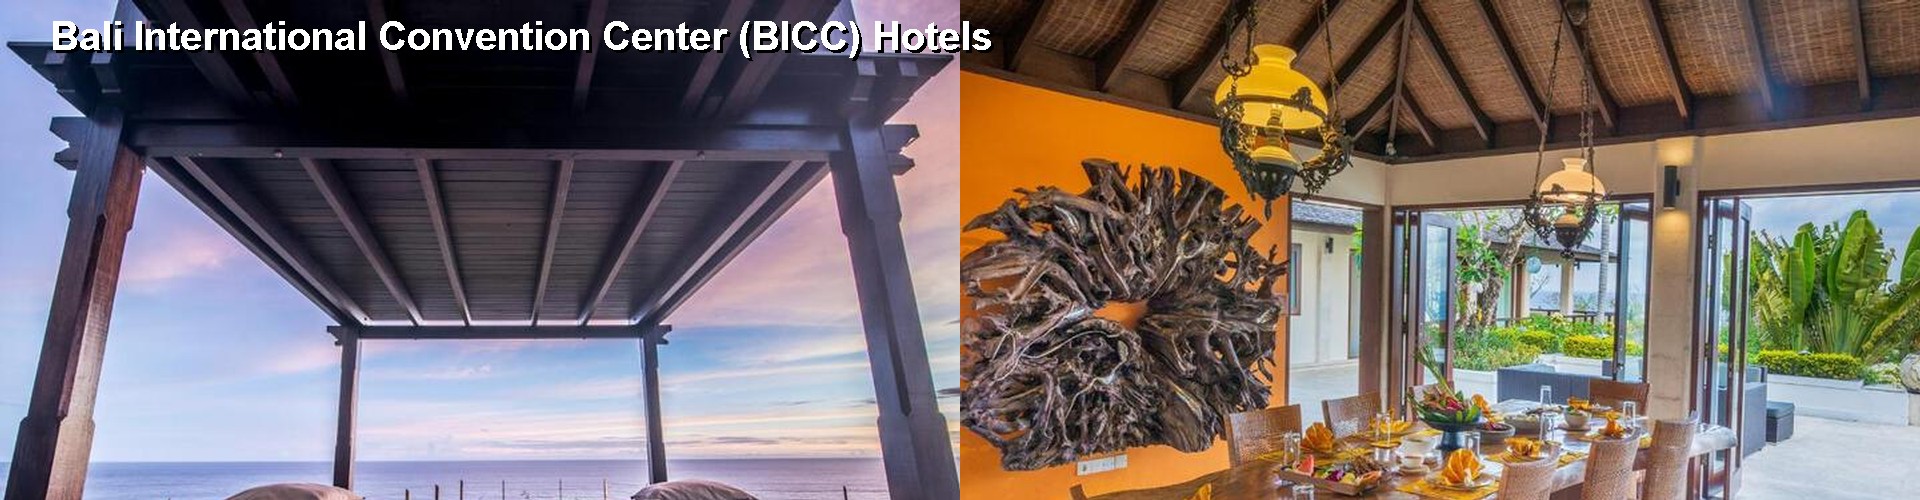 5 Best Hotels near Bali International Convention Center (BICC)